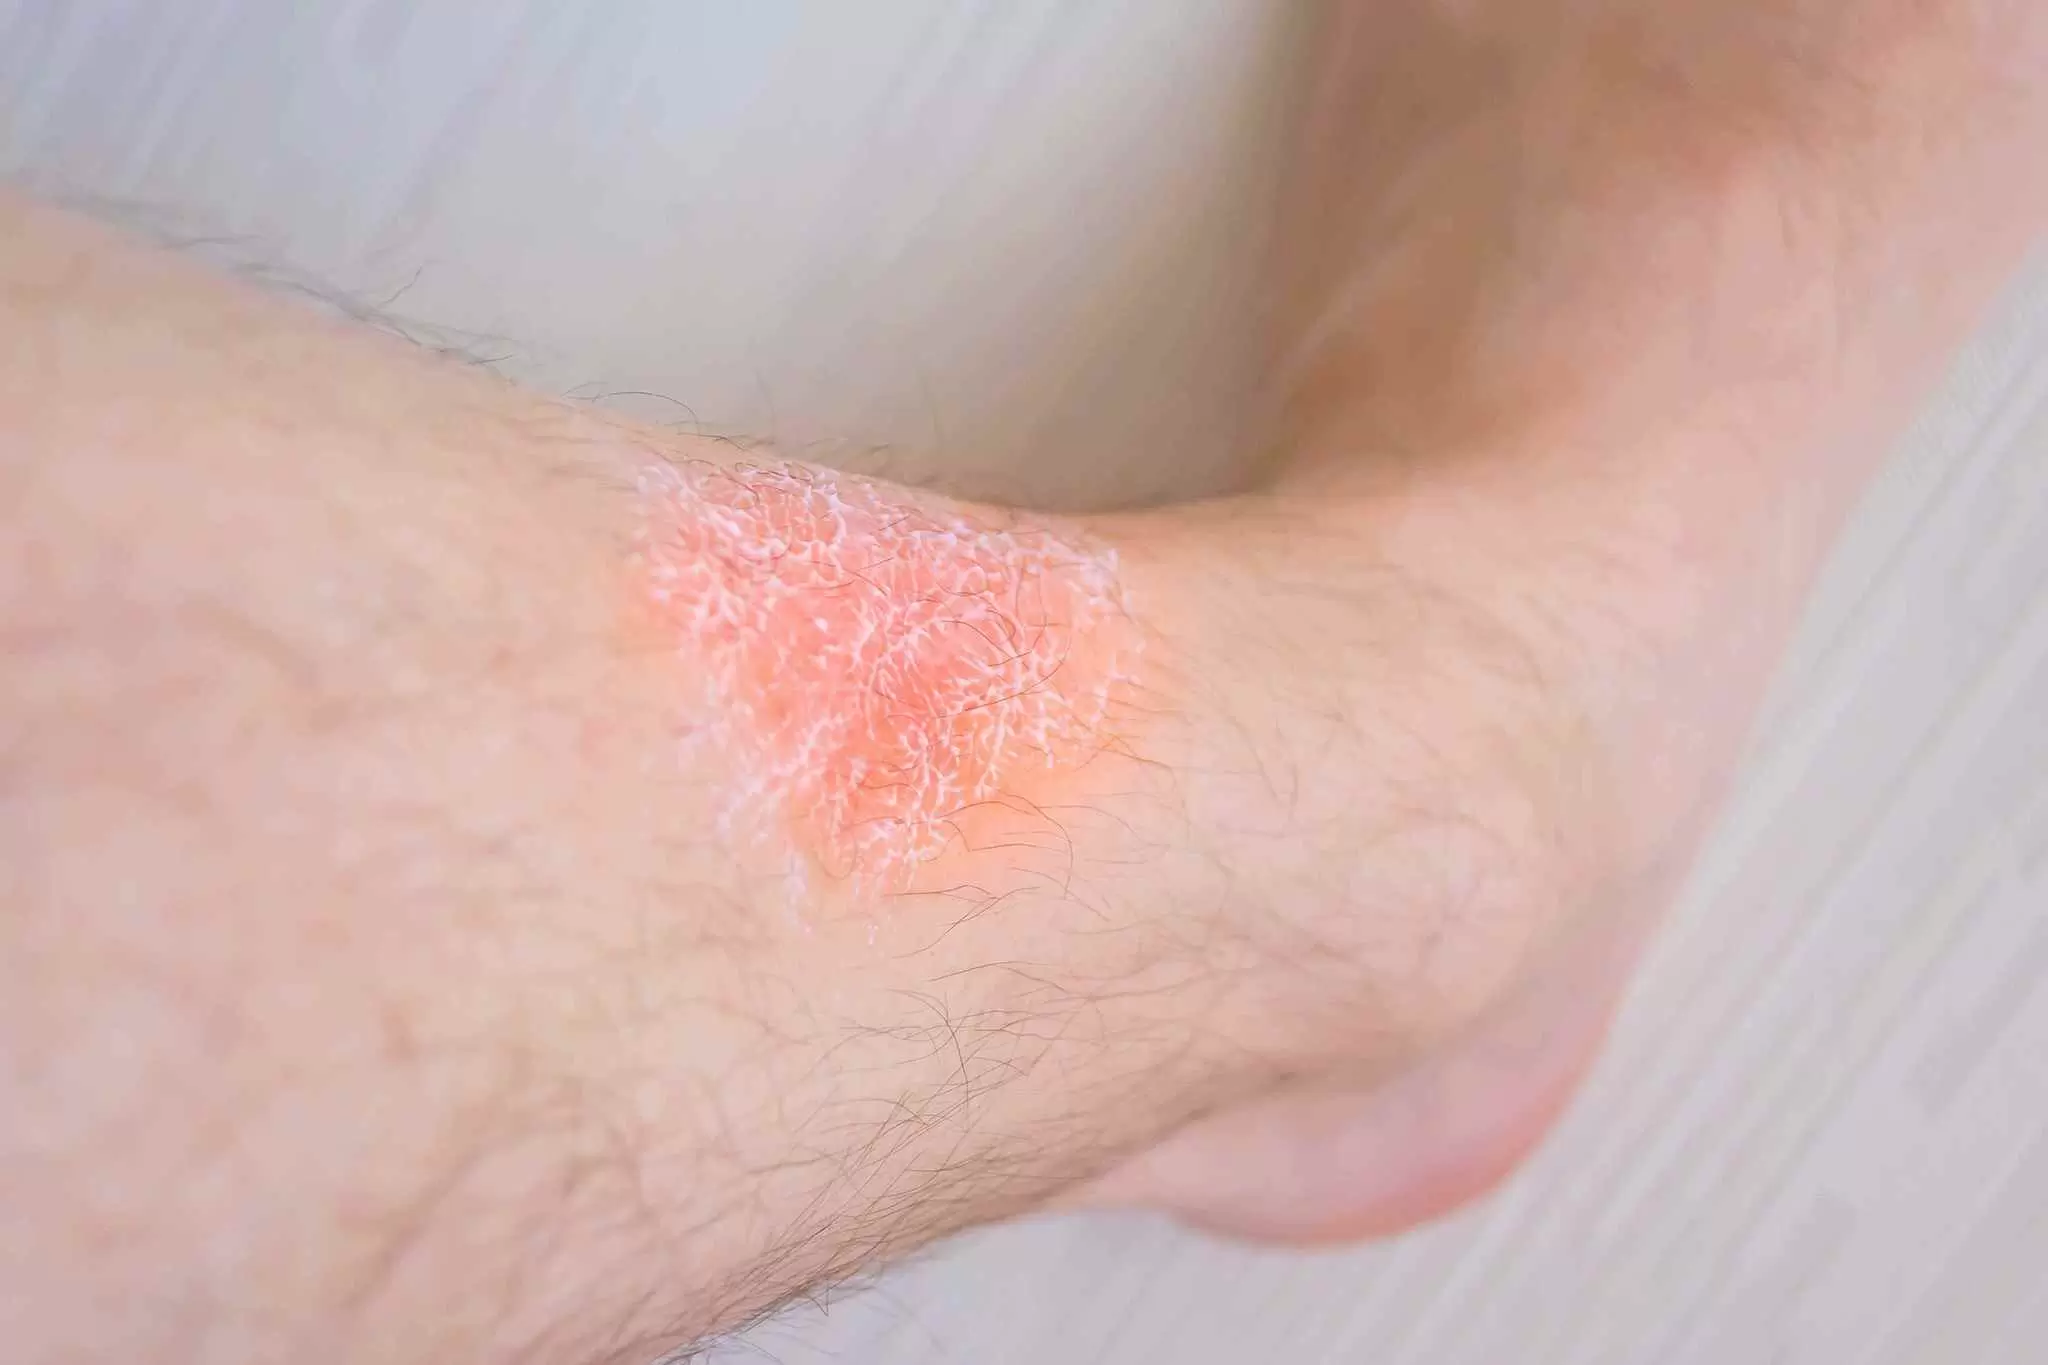 Stasis Dermatitis, Venous Eczema